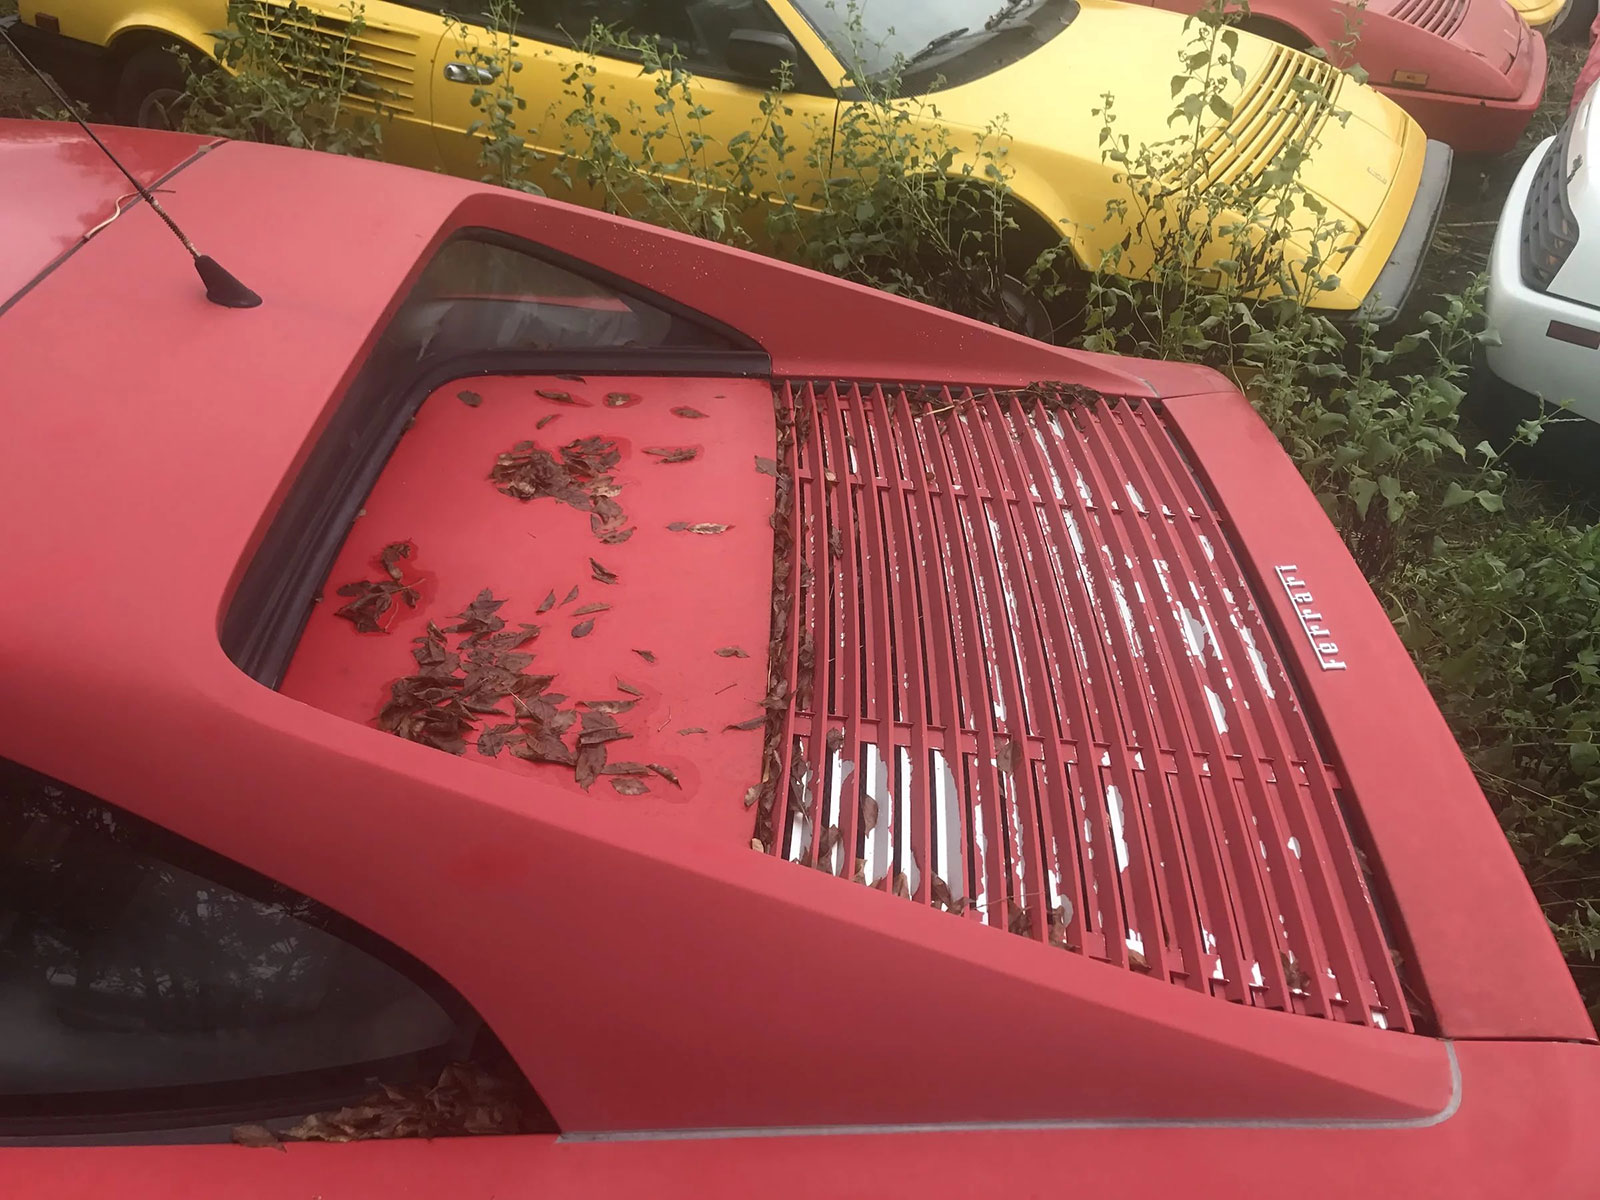 Phát hiện bộ sưu tập siêu xe Ferrari nằm phơi thân suốt 1 thập kỷ tại một bãi cỏ tại Mỹ a7